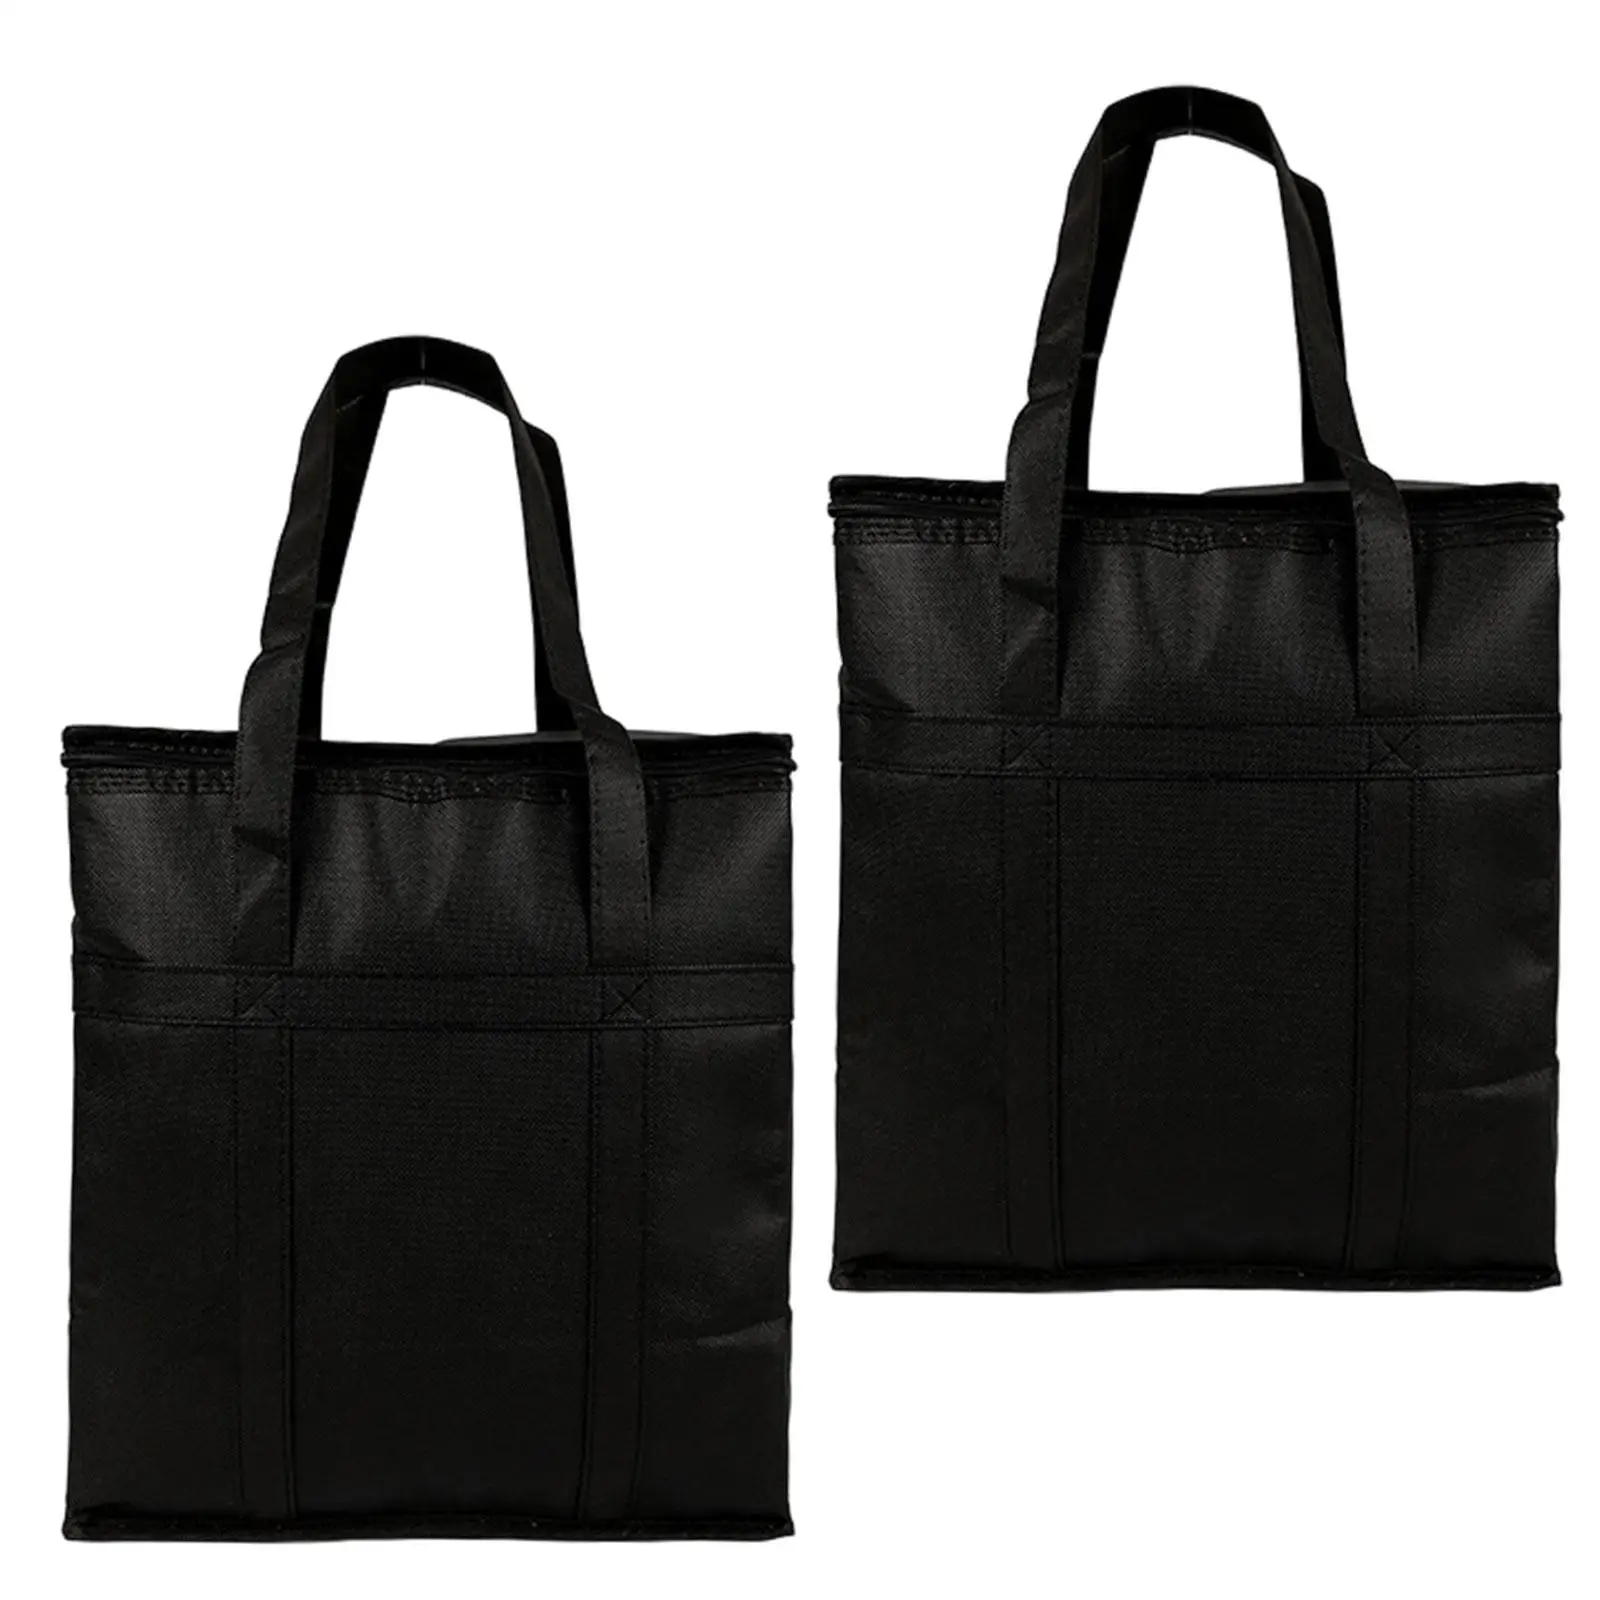 Изолированные сумки навынос с верхней сумкой на молнии, изолированная сумка для доставки еды для барбекю, ресторана на открытом воздухе, холодной или теплой еды